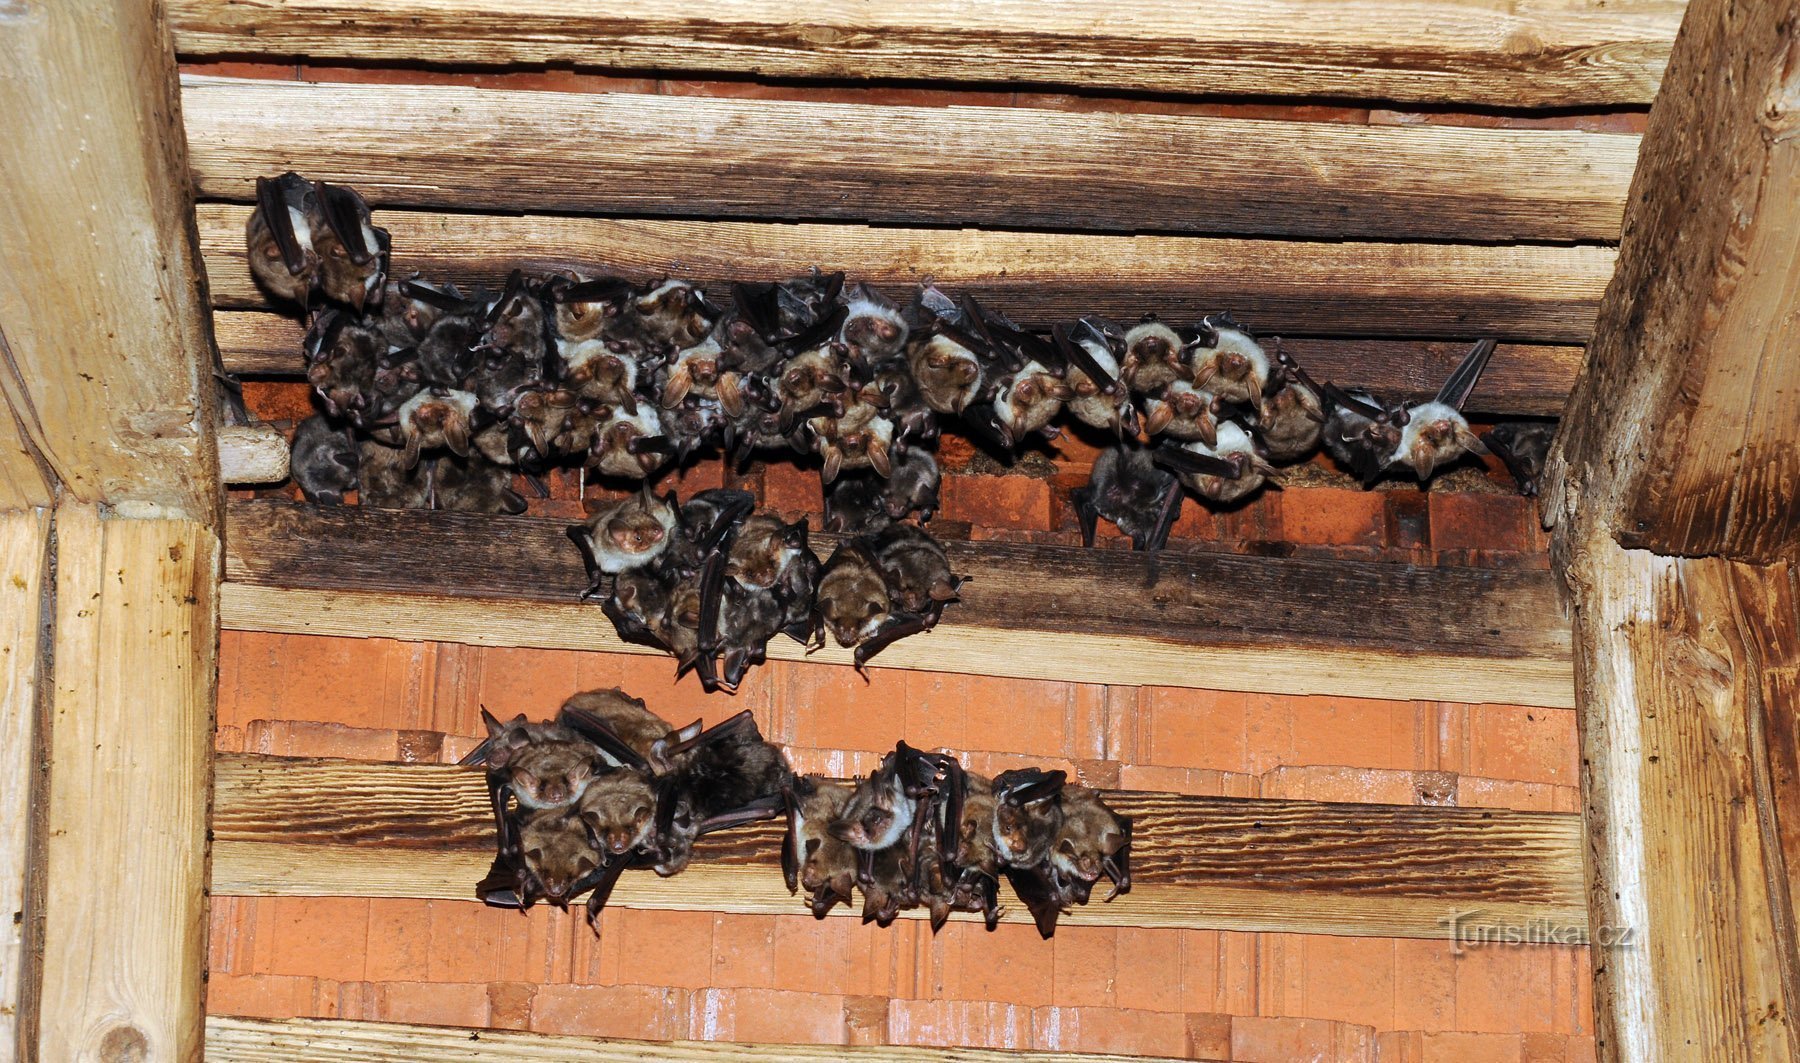 letní kolonie netopýra velkého